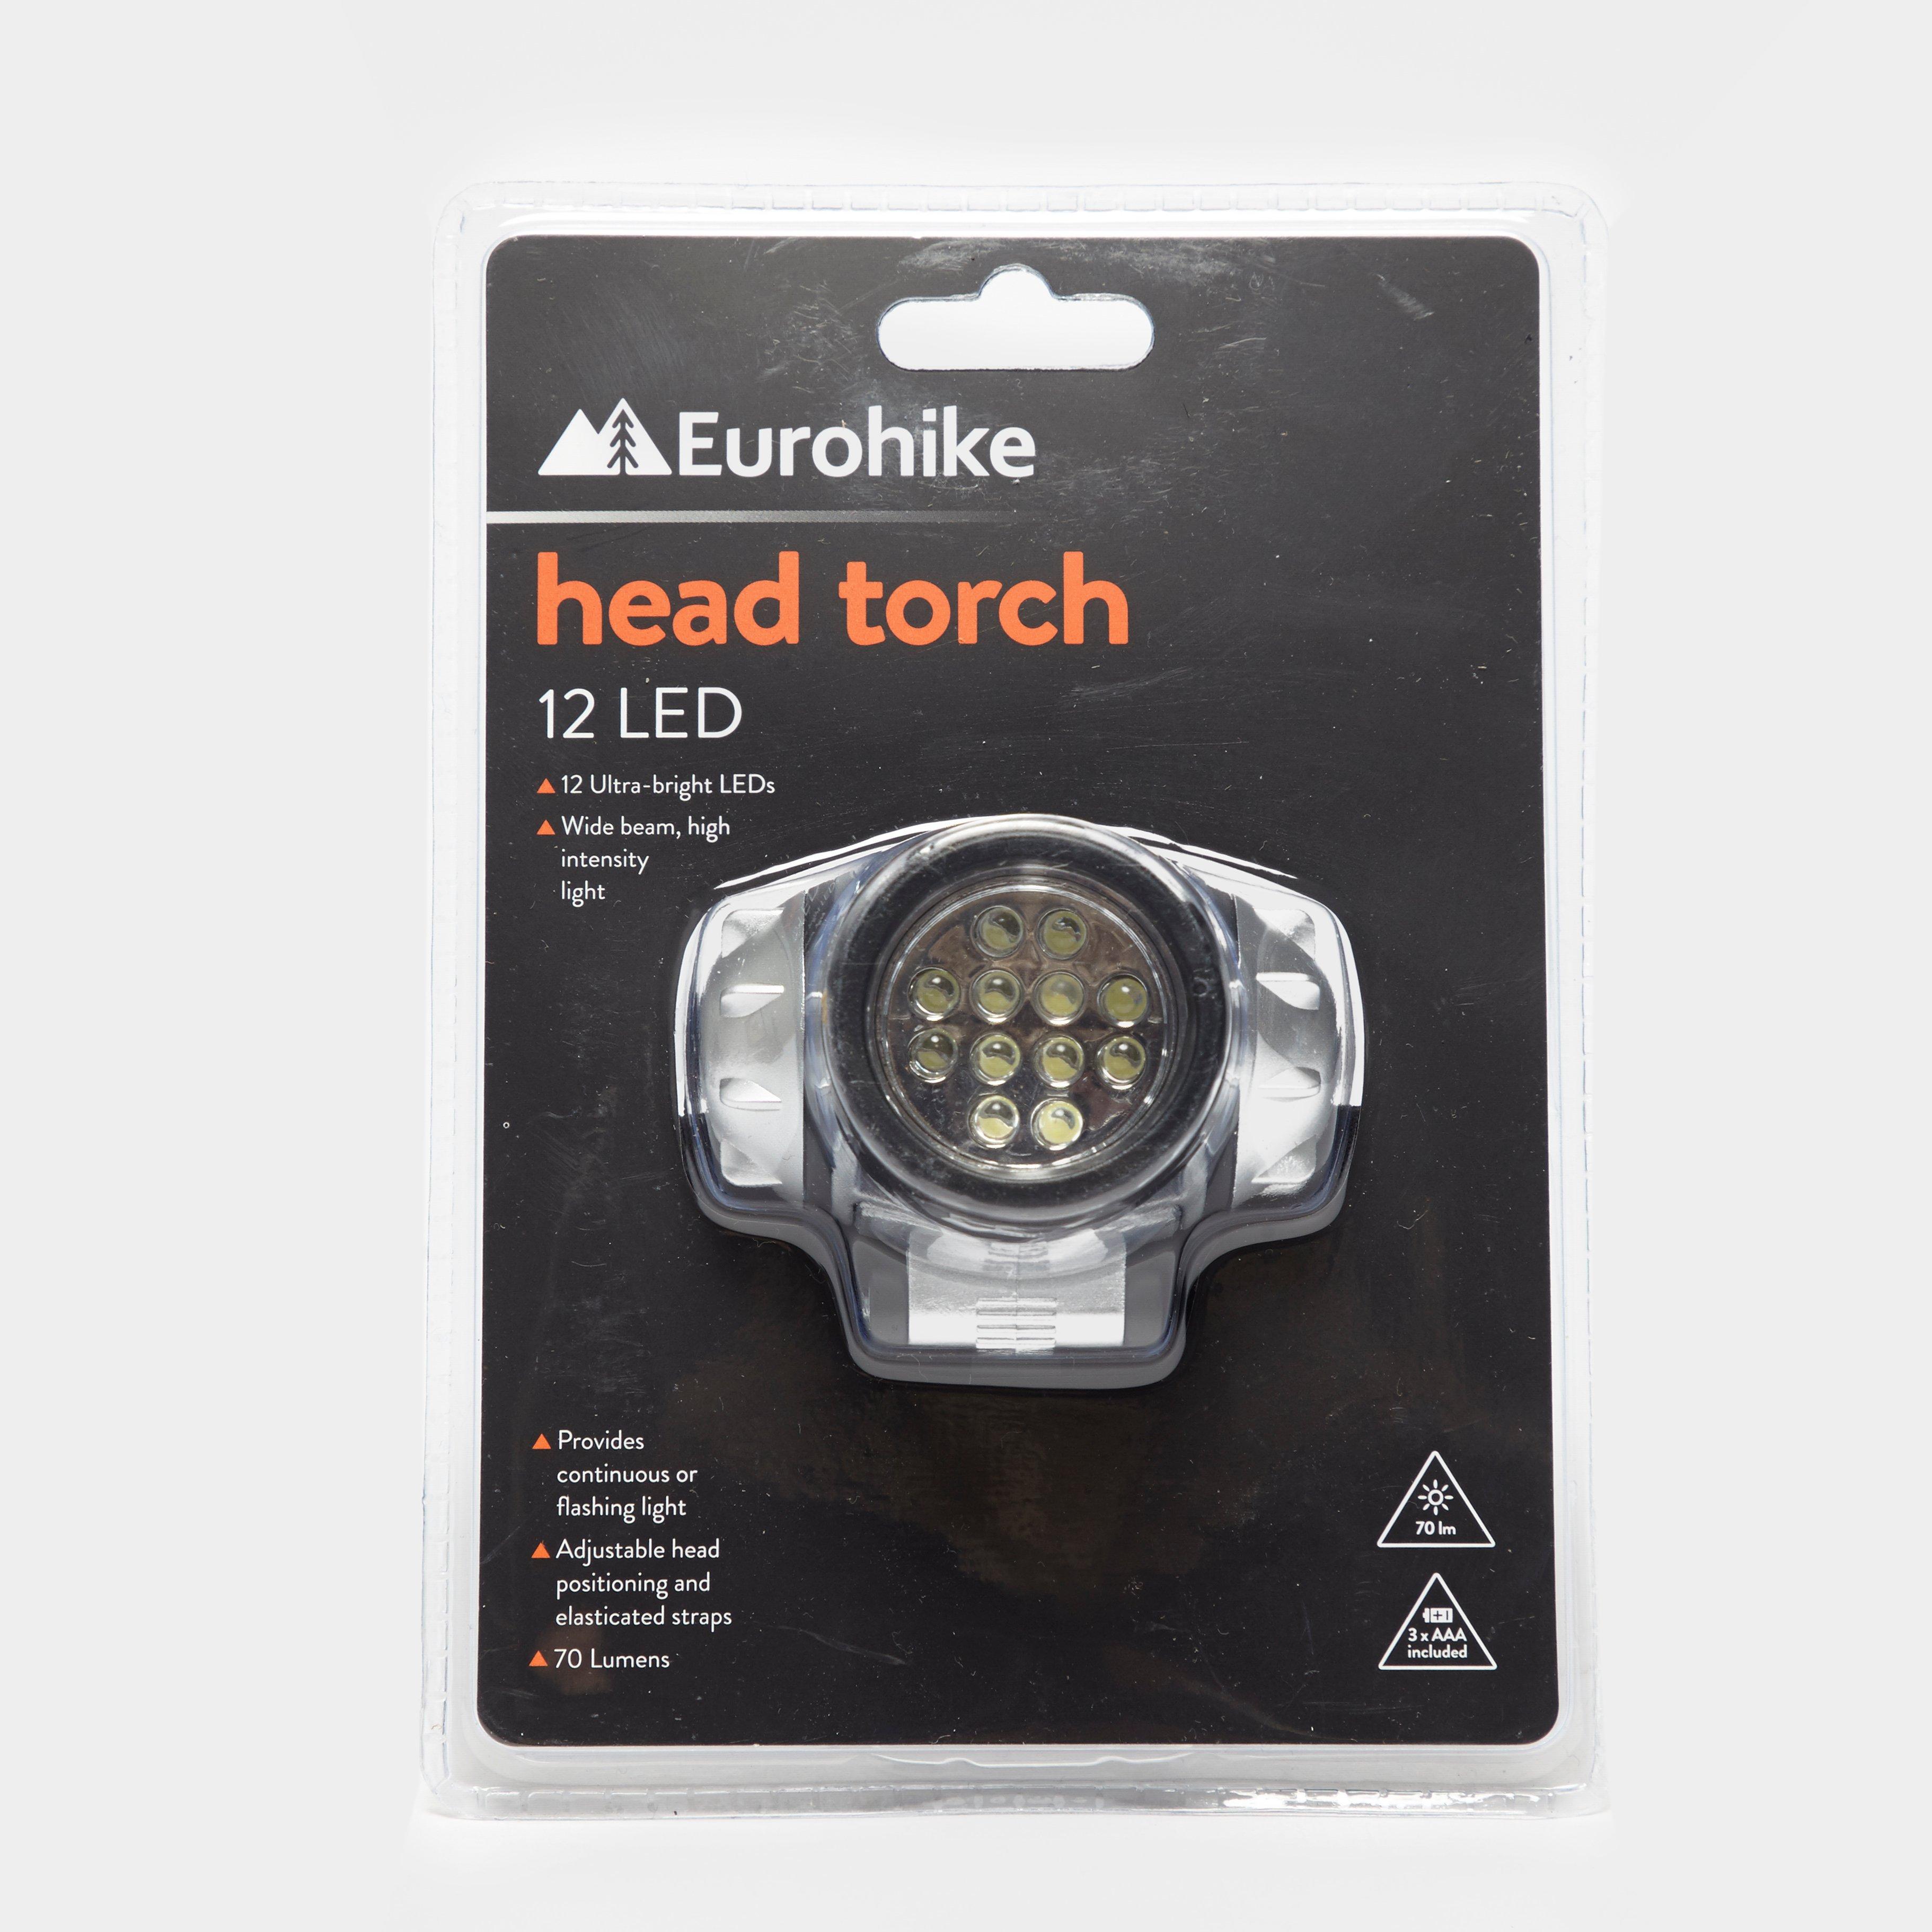 Eurohike Eurohike 12 LED Head Torch Review